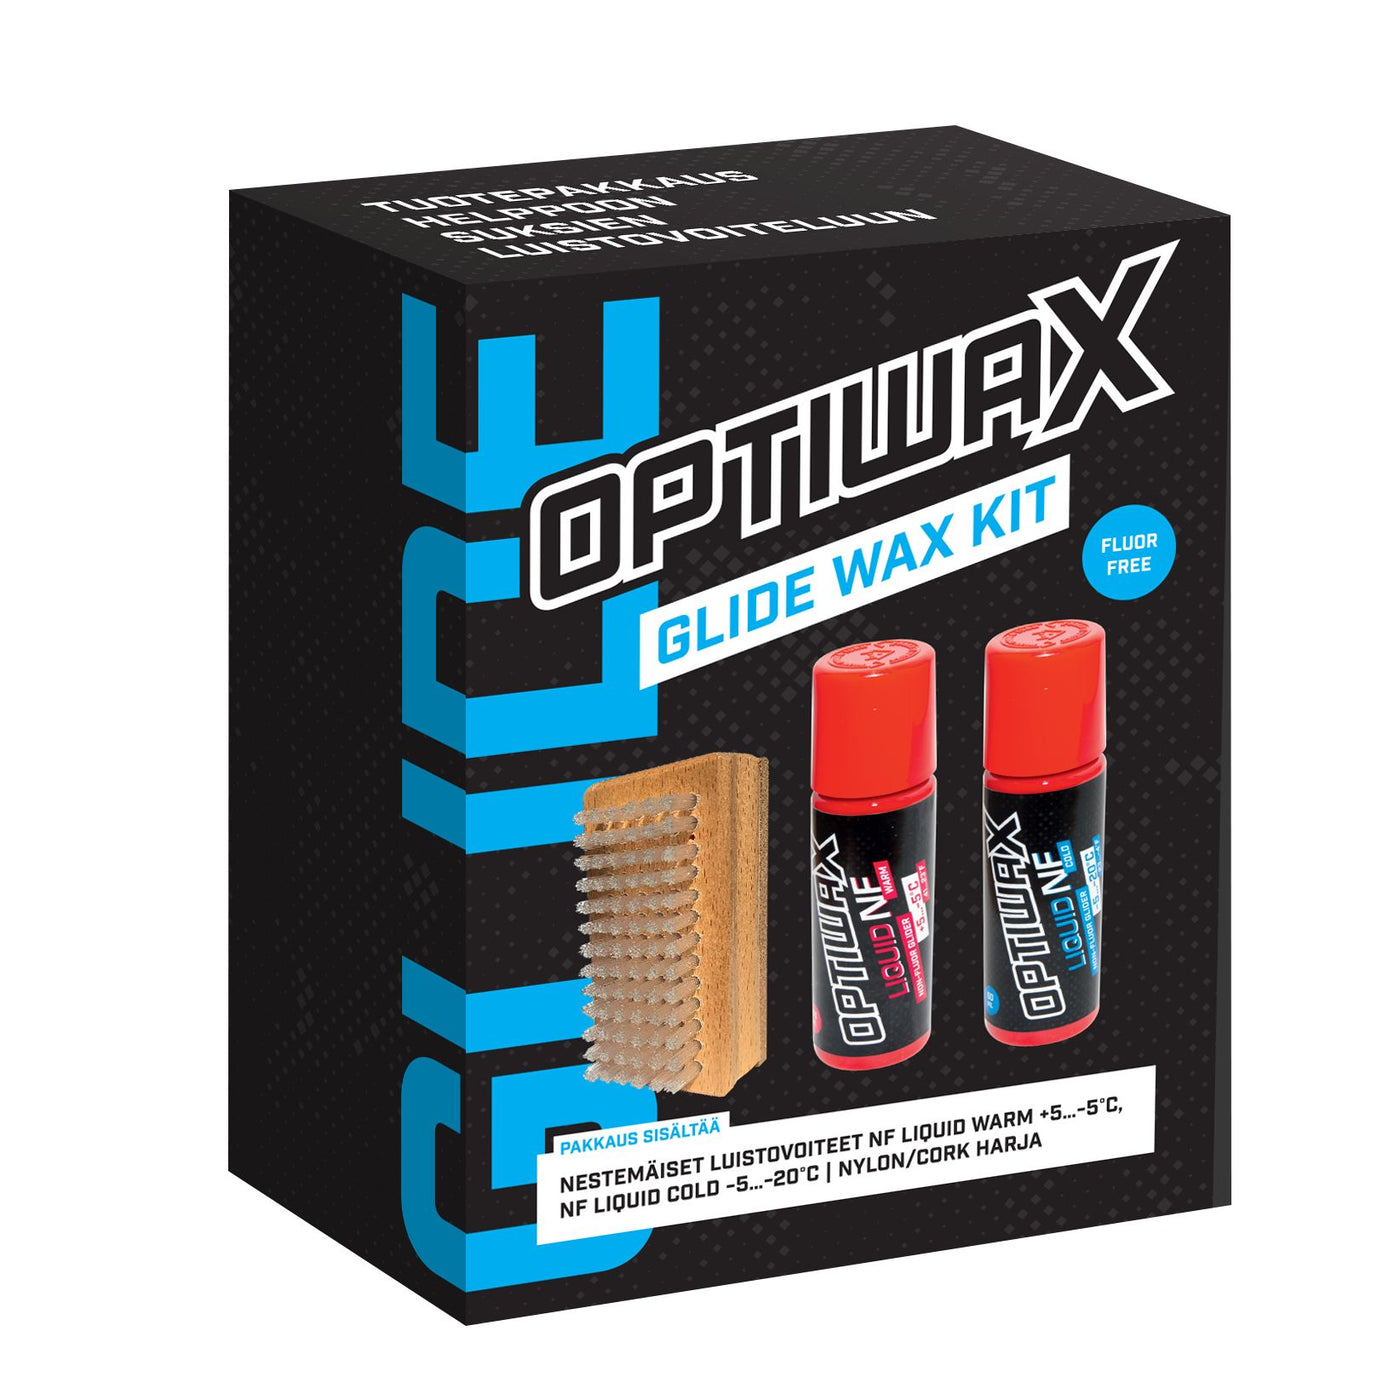 Optiwax Glide wax kit